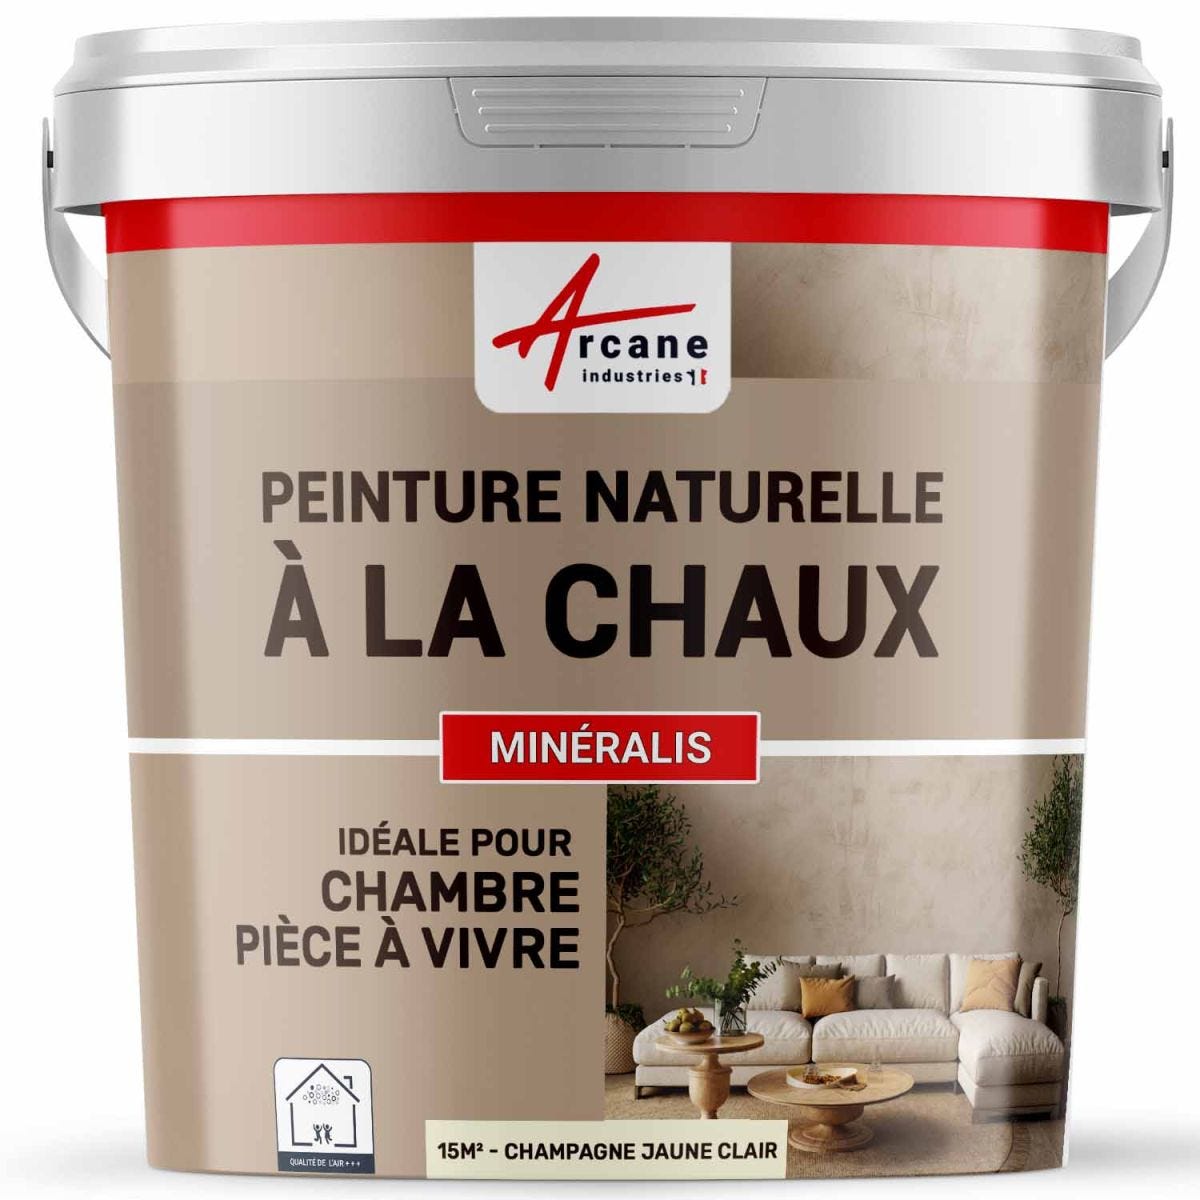 PEINTURE A LA CHAUX NATURELLE ET SAINE - NUANCES MINERALES CHAUX - 15 m² (2.5 kg en 1 couche) - Champagne Jaune Clair - ARCANE INDUSTRIES 0